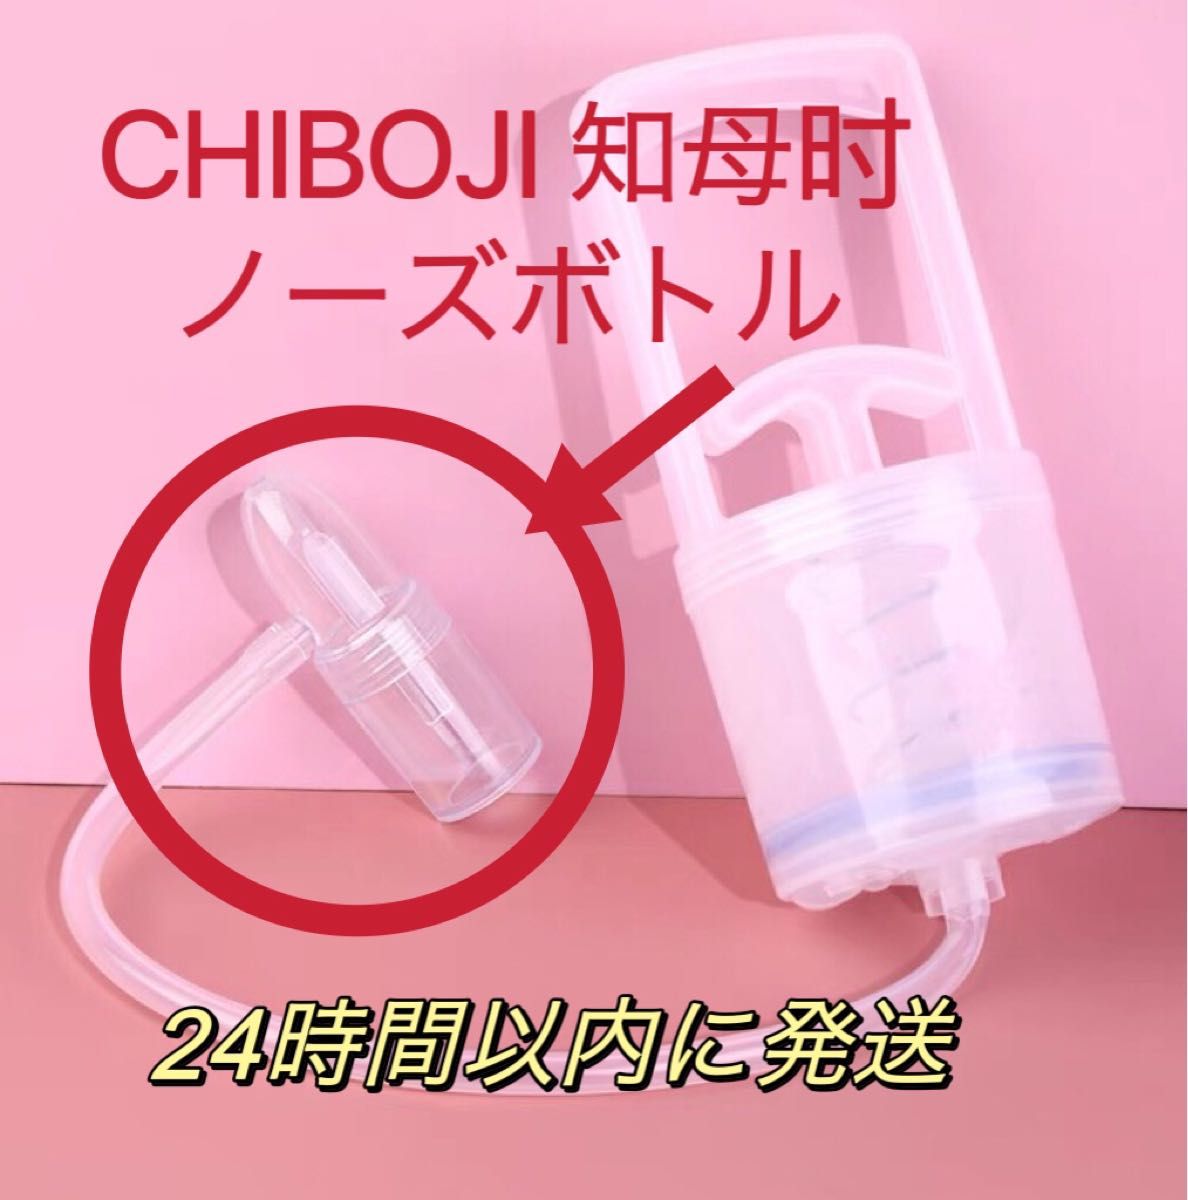 知母時鼻水吸引器 CHIBOJI 専用パーツ　ノーズボトル+シリコンチューブ